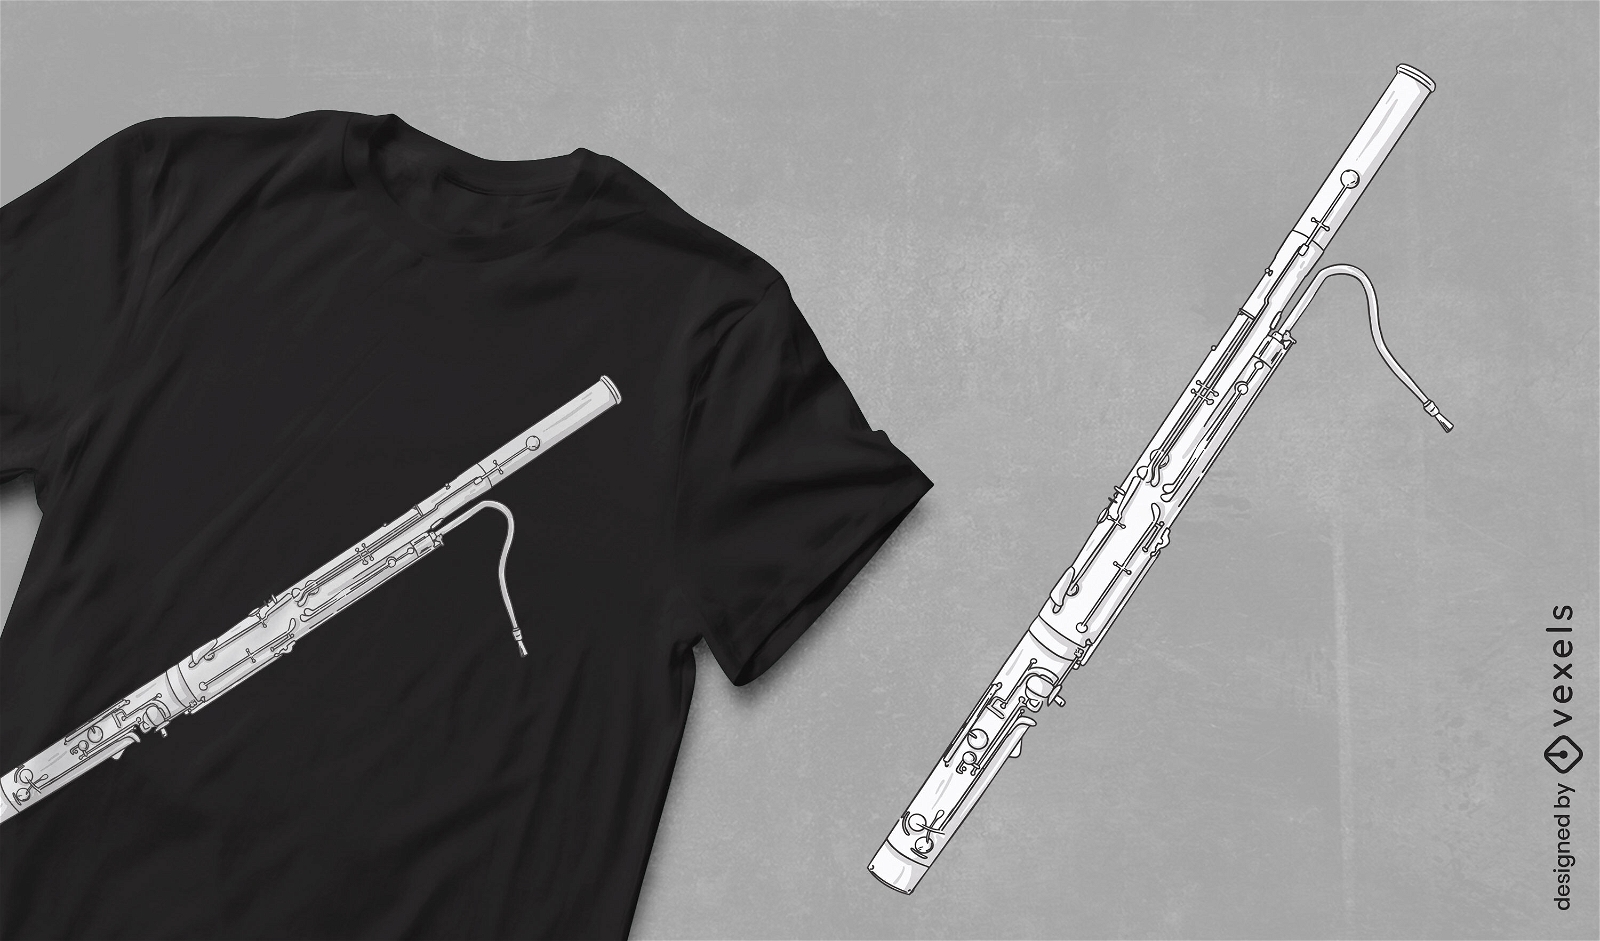 Diseño de camiseta de instrumento musical de fagot.